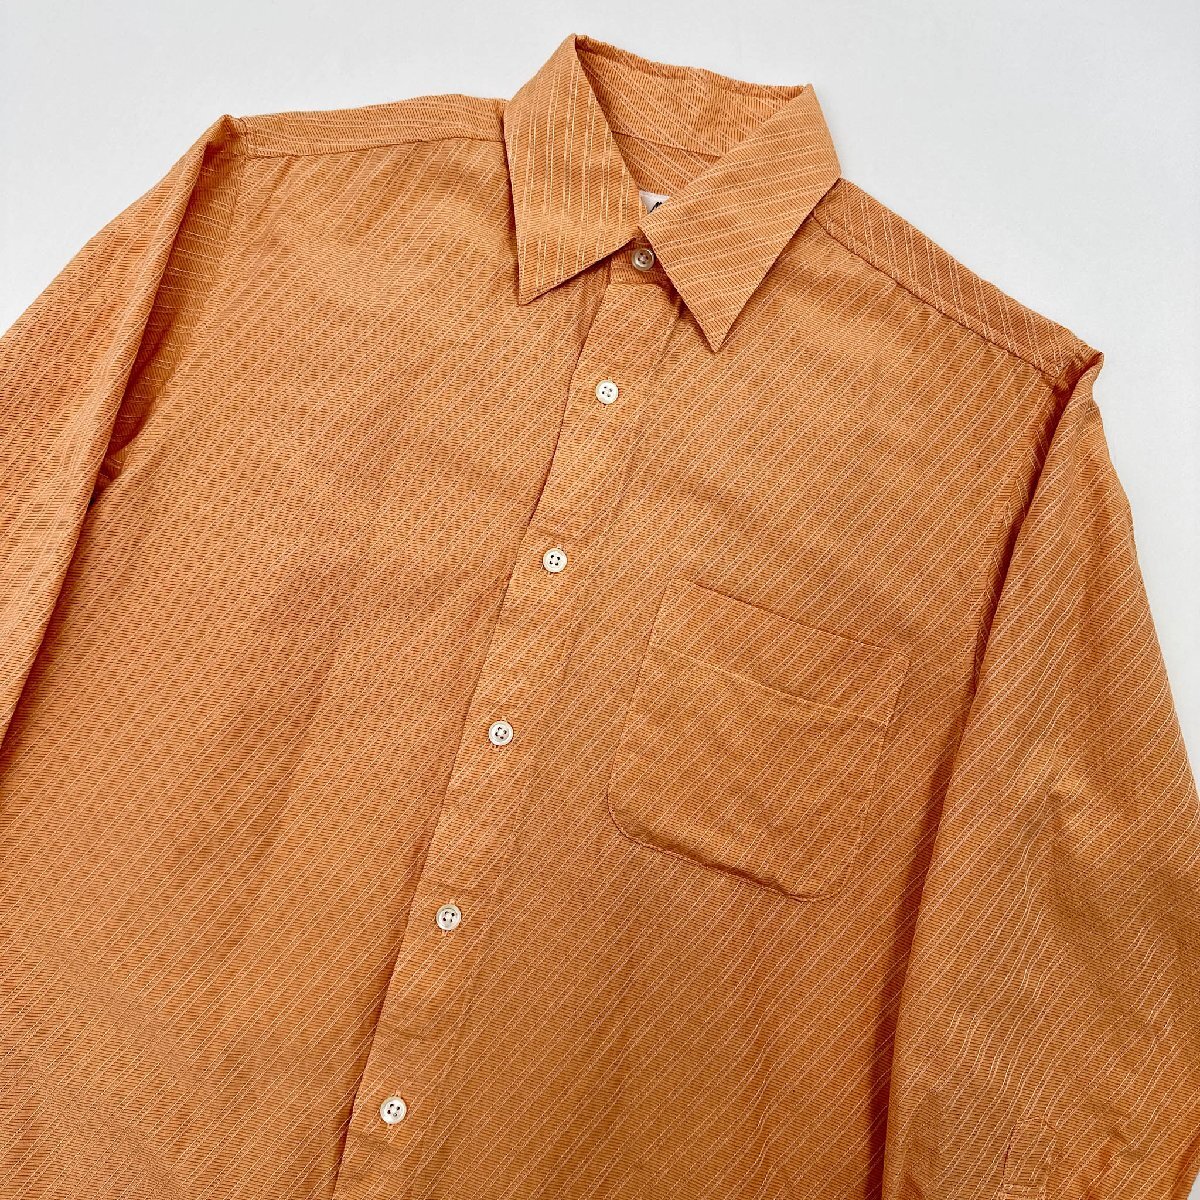 シルク混◆高級◆ARAMIS アラミス 斜めストライプ柄 長袖シャツ S /オレンジ/シルク&コットン/絹/ドレスシャツ_画像2